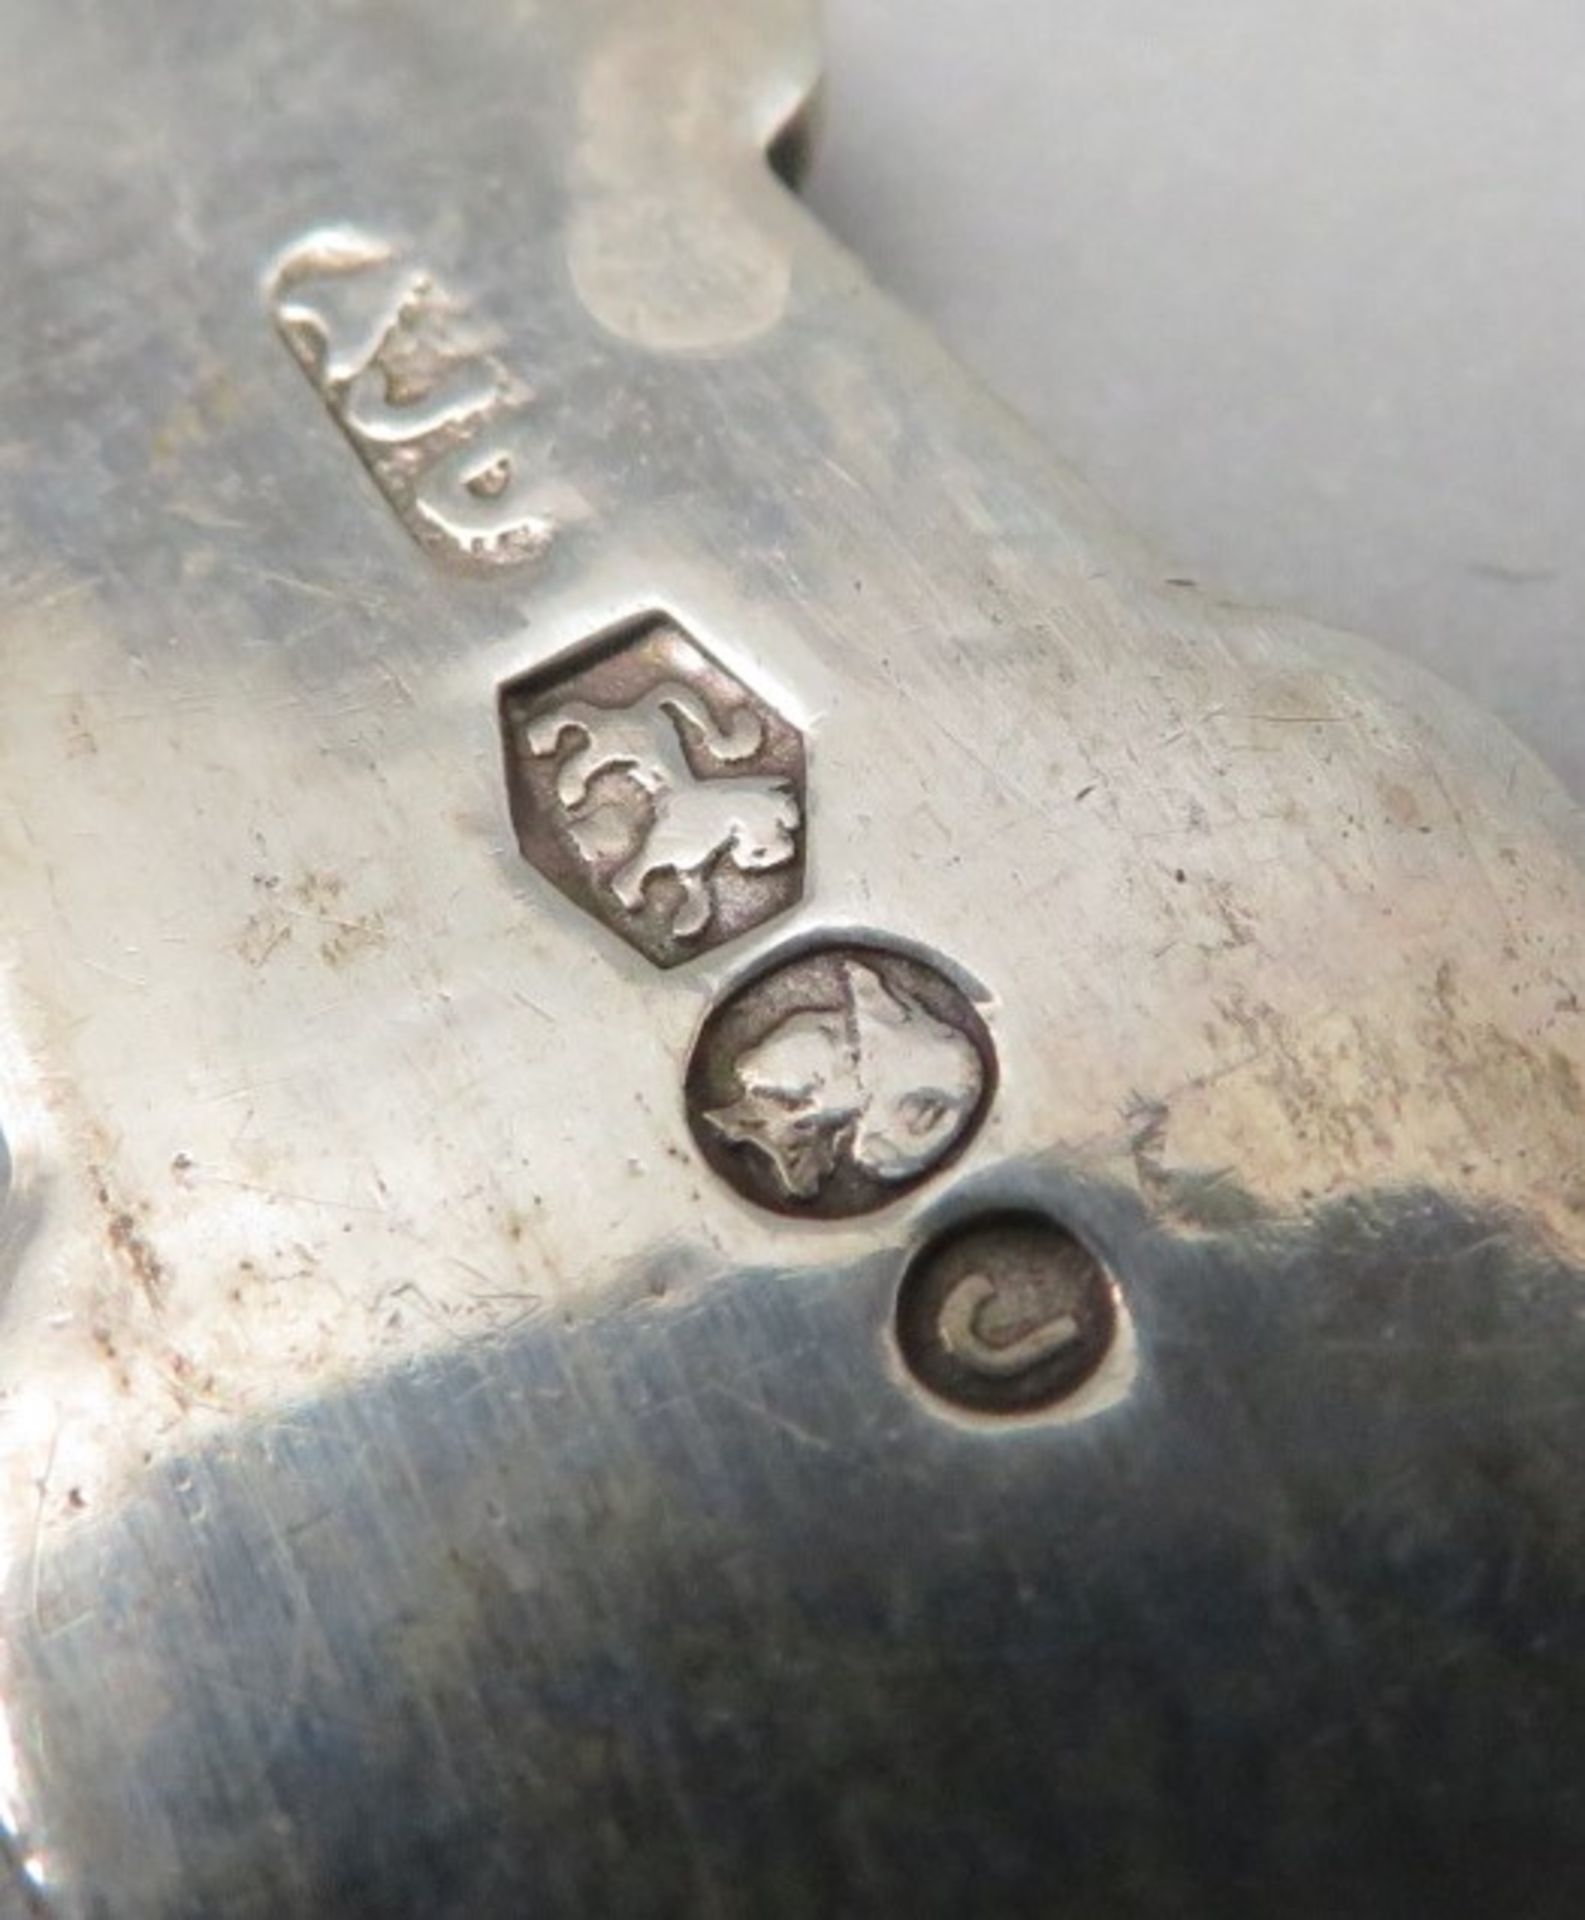 2 Vorlegegabeln, 19. Jahrhundert, Silber 835/000, punziert, 27,3 g, ziselierter Griff, l 13 cm. - Image 2 of 2